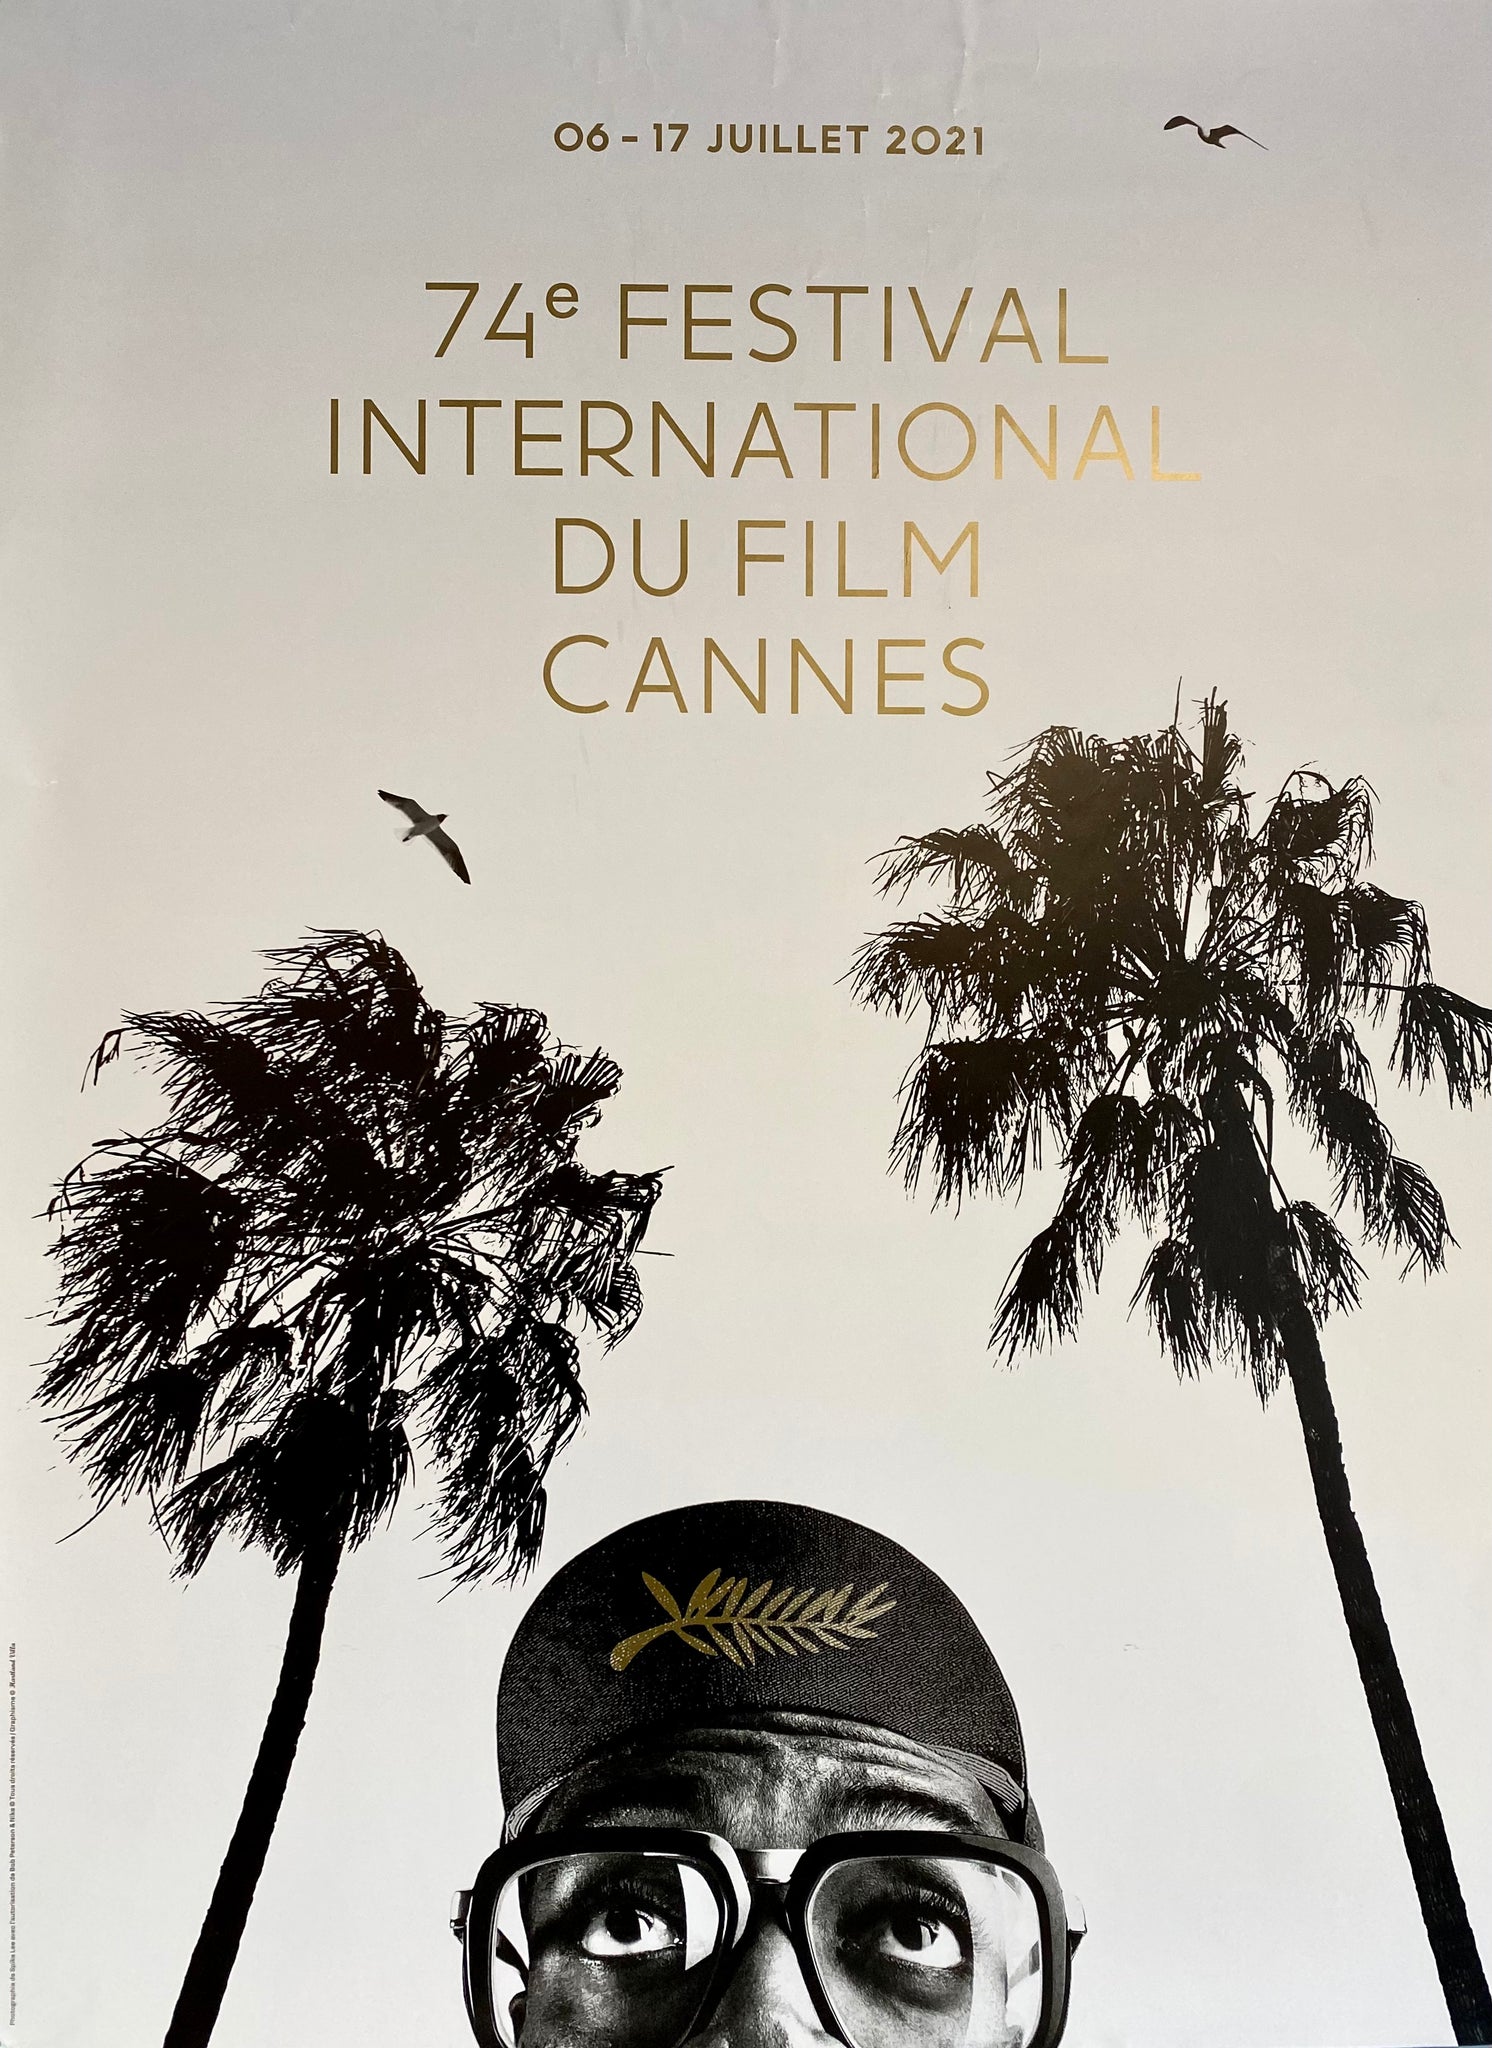 Le Festival de Cannes - L'événement cinématographique incontournable   Un lieu de rencontre pour les professionnels du cinéma